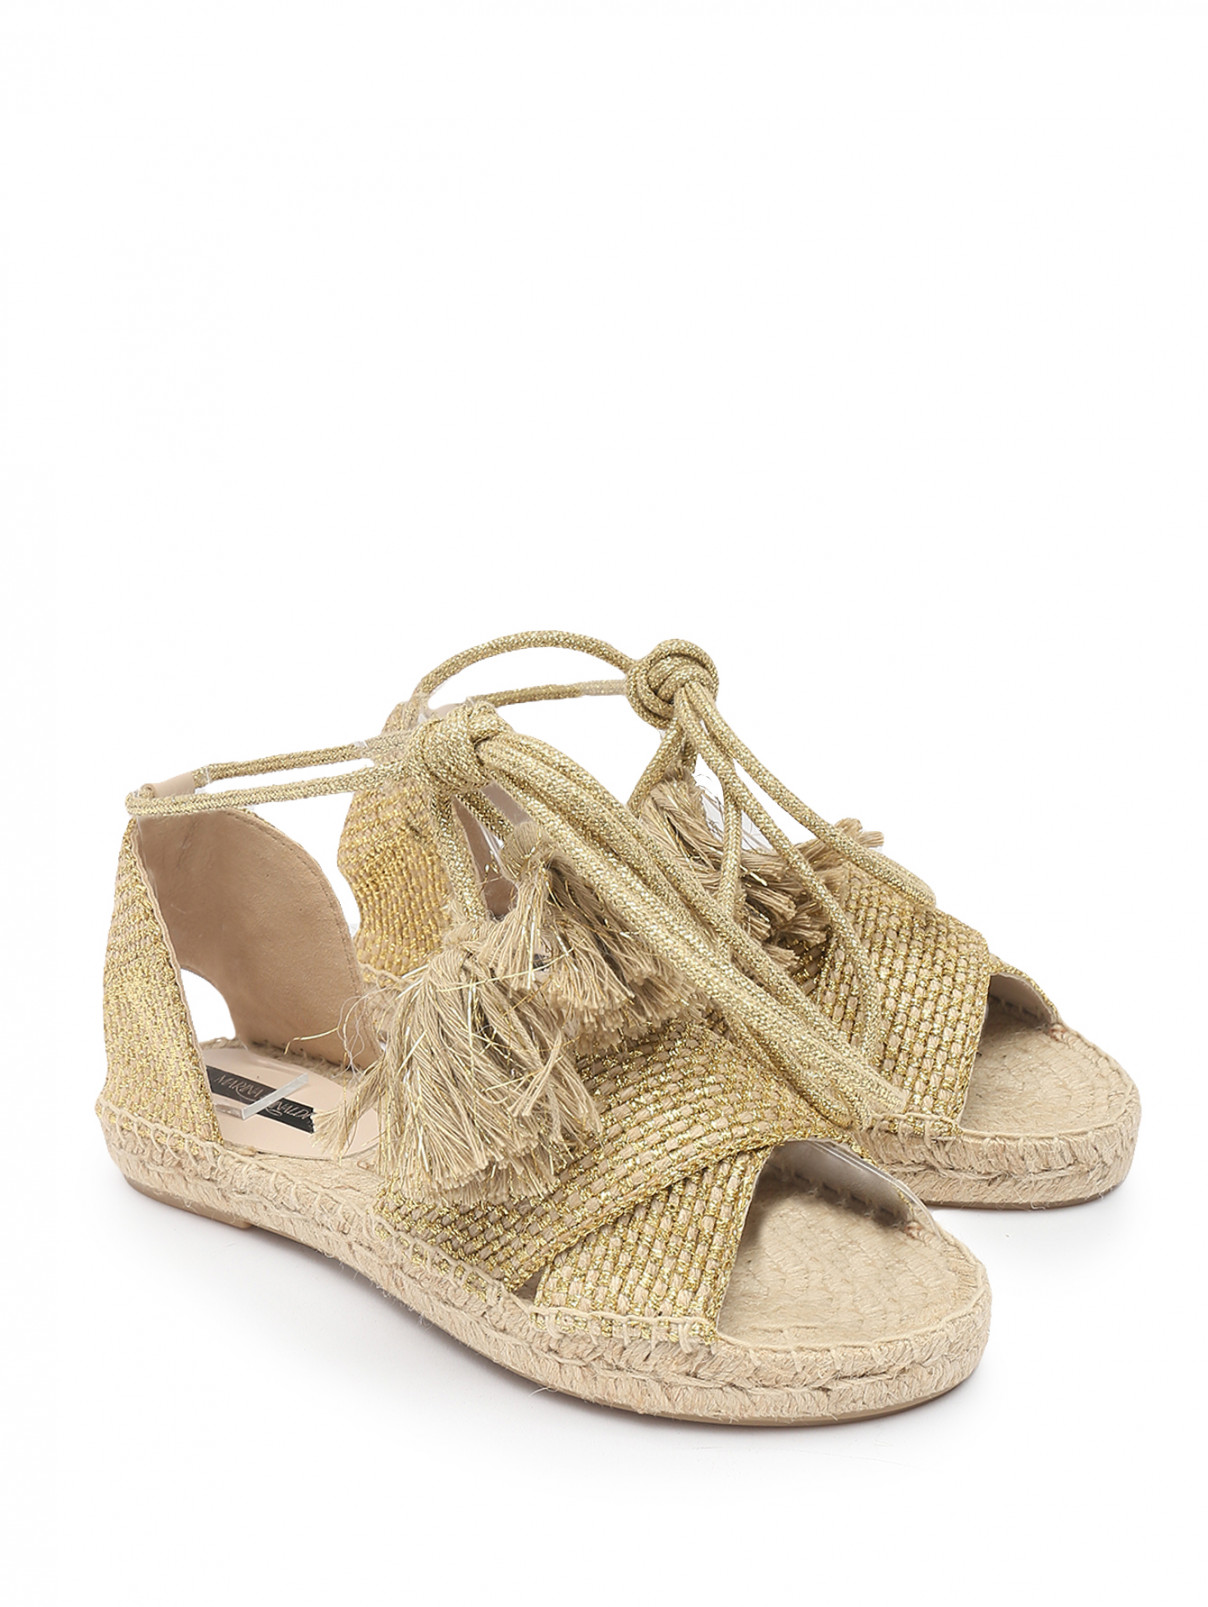 Плетеные сандалии на завязках Marina Rinaldi  –  Общий вид  – Цвет:  Золотой